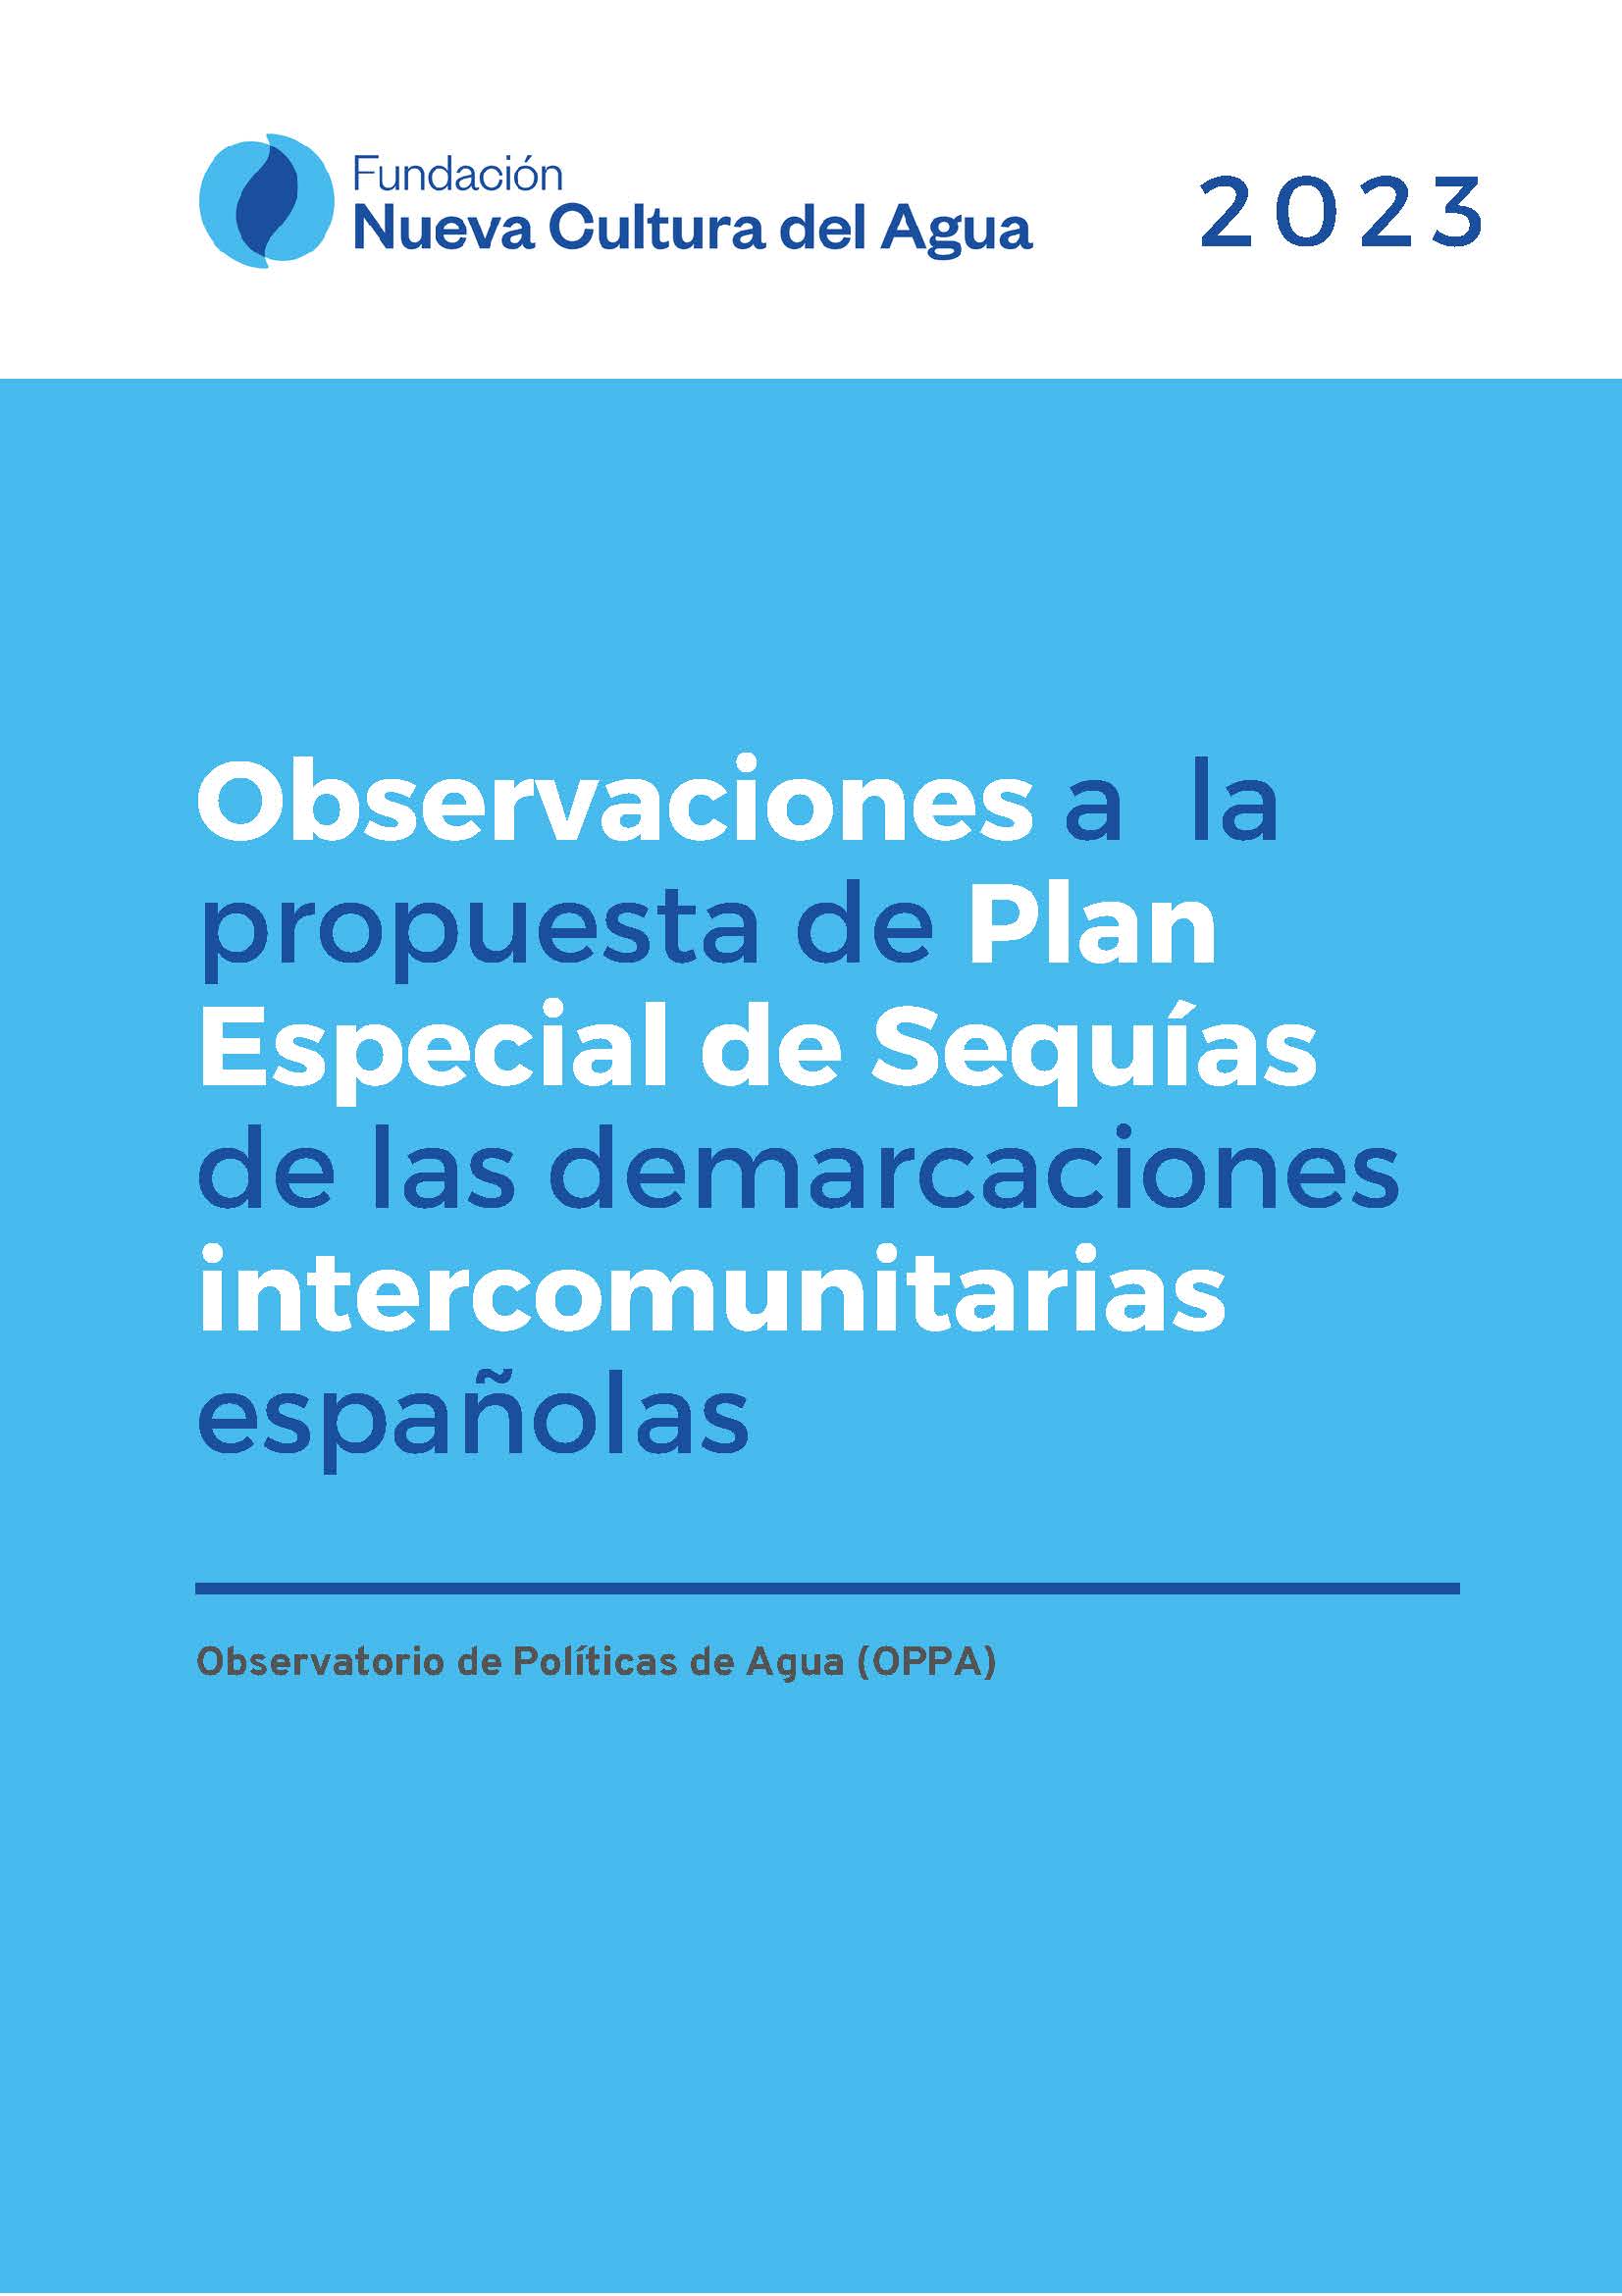 Observaciones a la propuesta de Plan Especial de Sequías de las demarcaciones intercomunitarias españolas